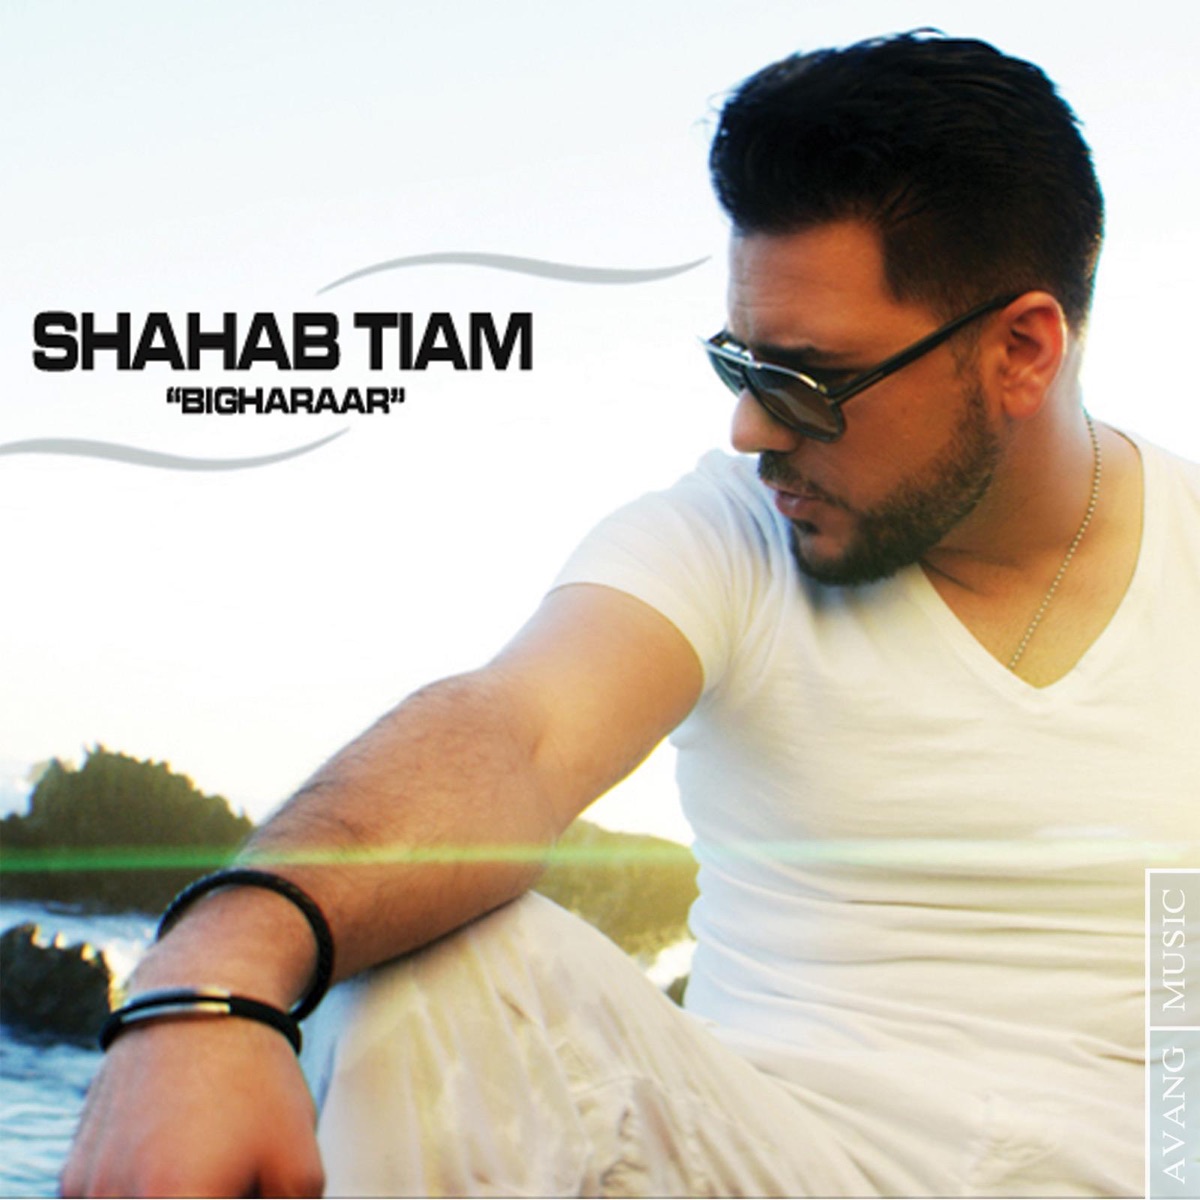 Manoto - Single - Album by Shahab Tiam - Apple Music